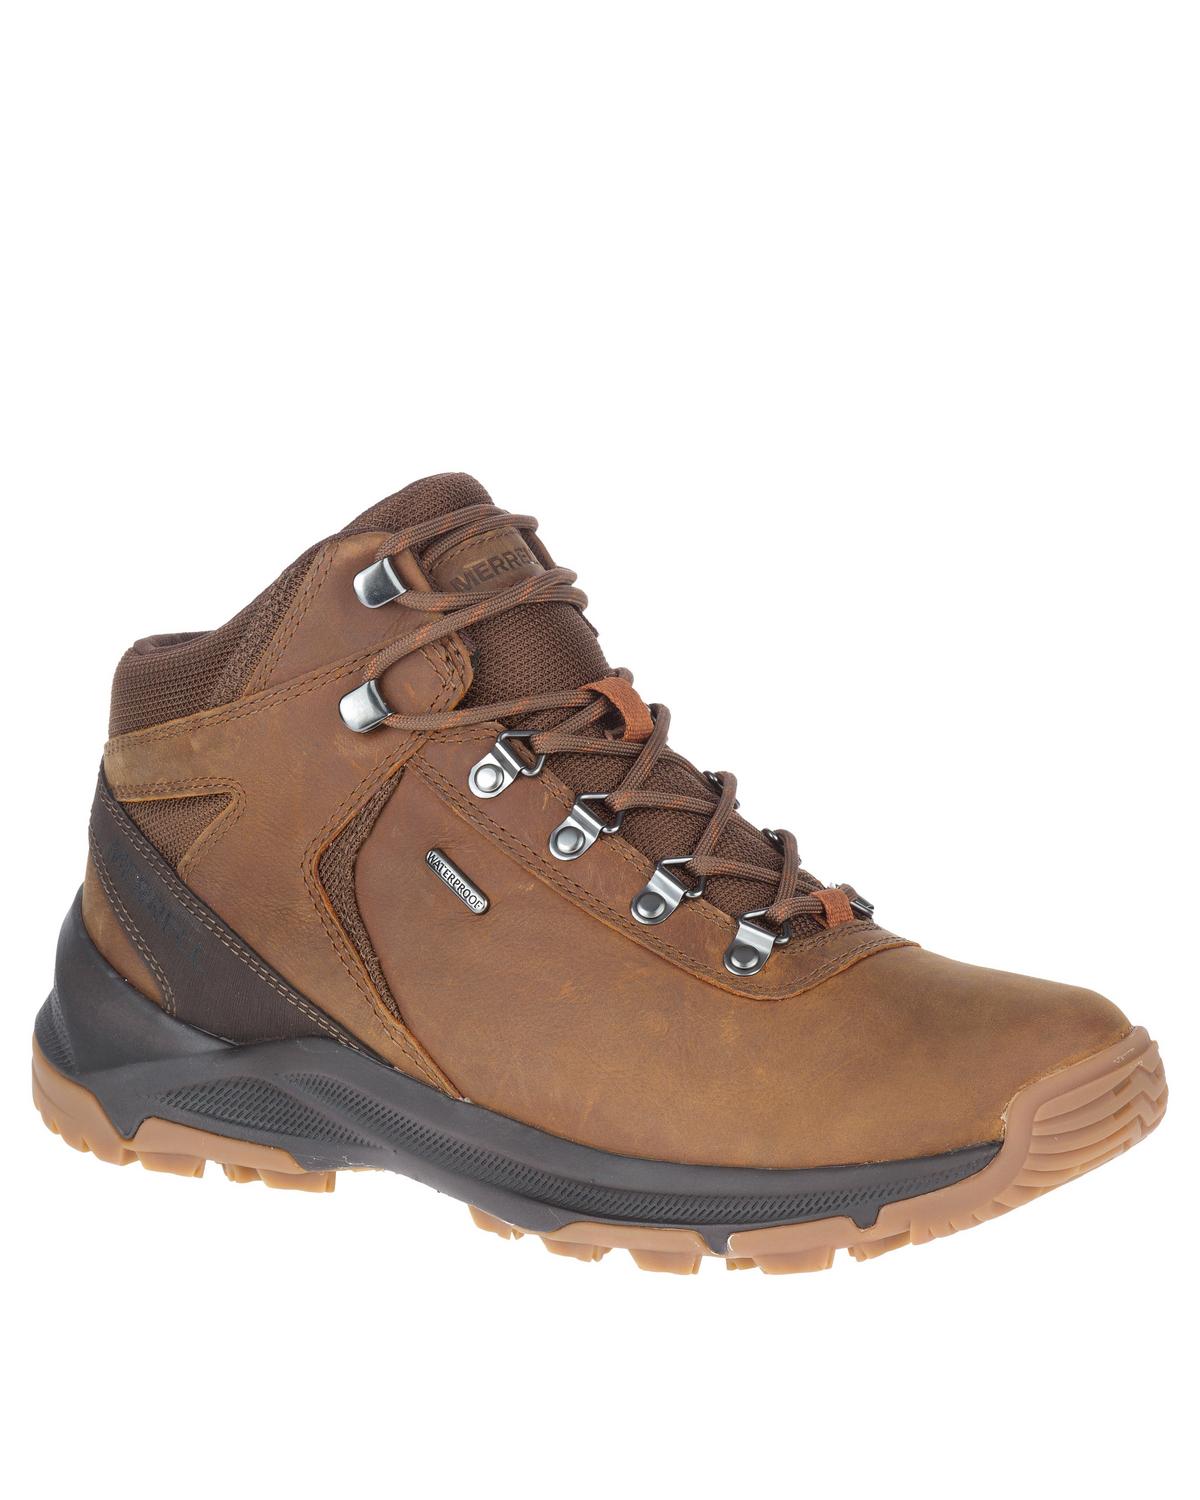 Merrell Men's Erie Waterproof Hiking Boots -  Brown